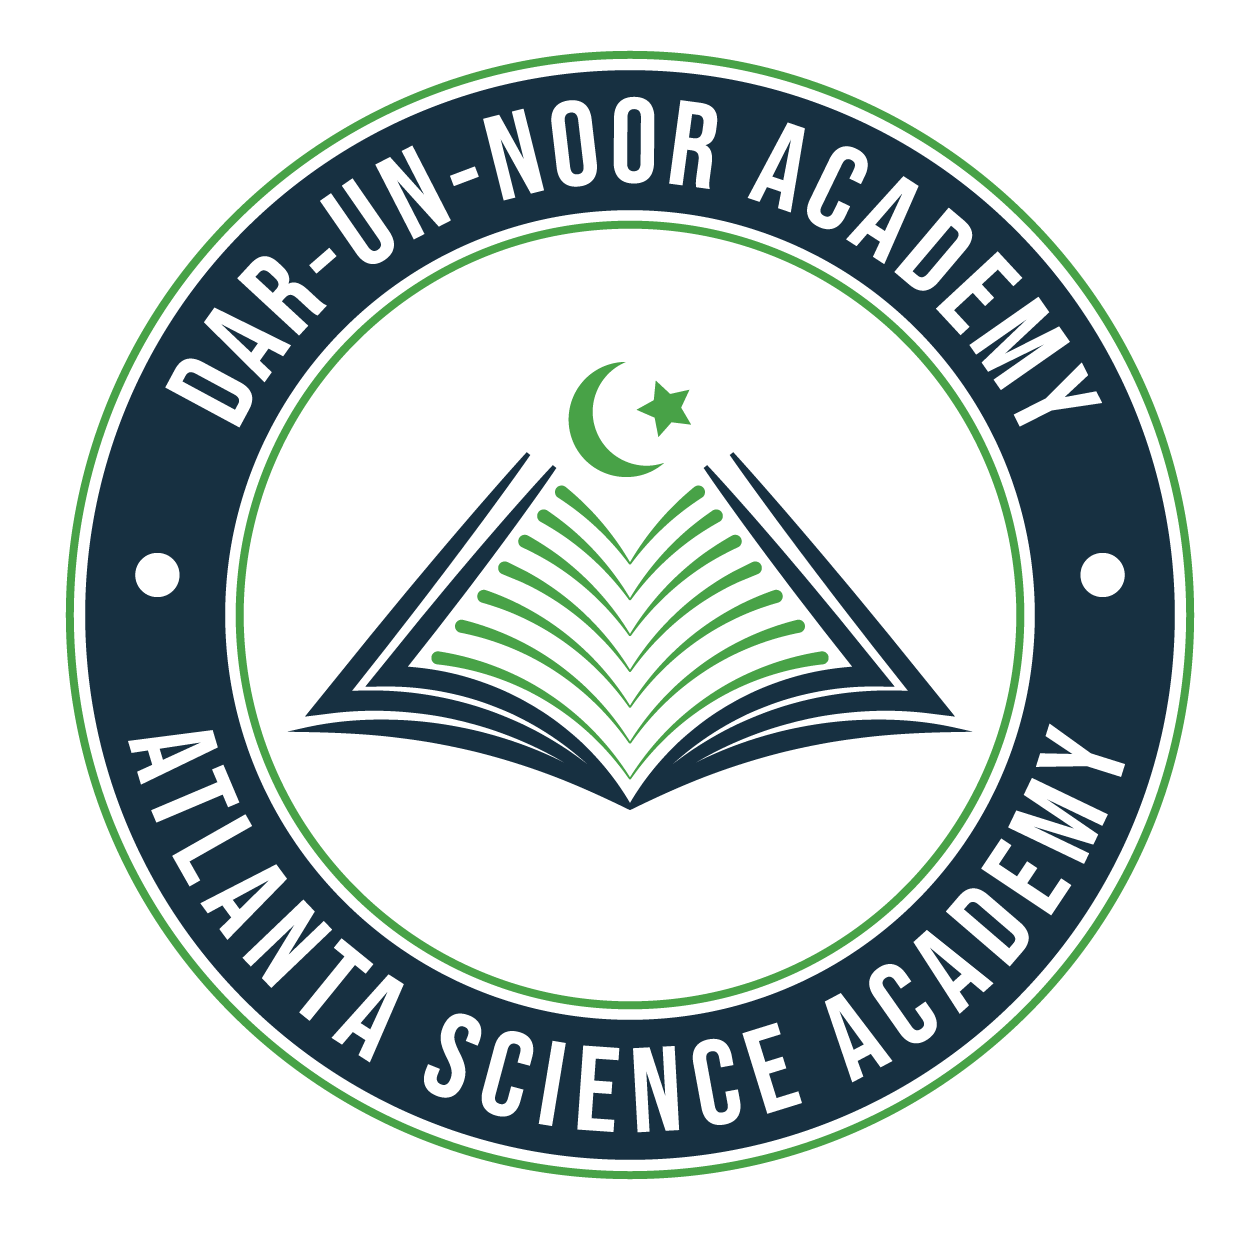 Dar un Noor Academy